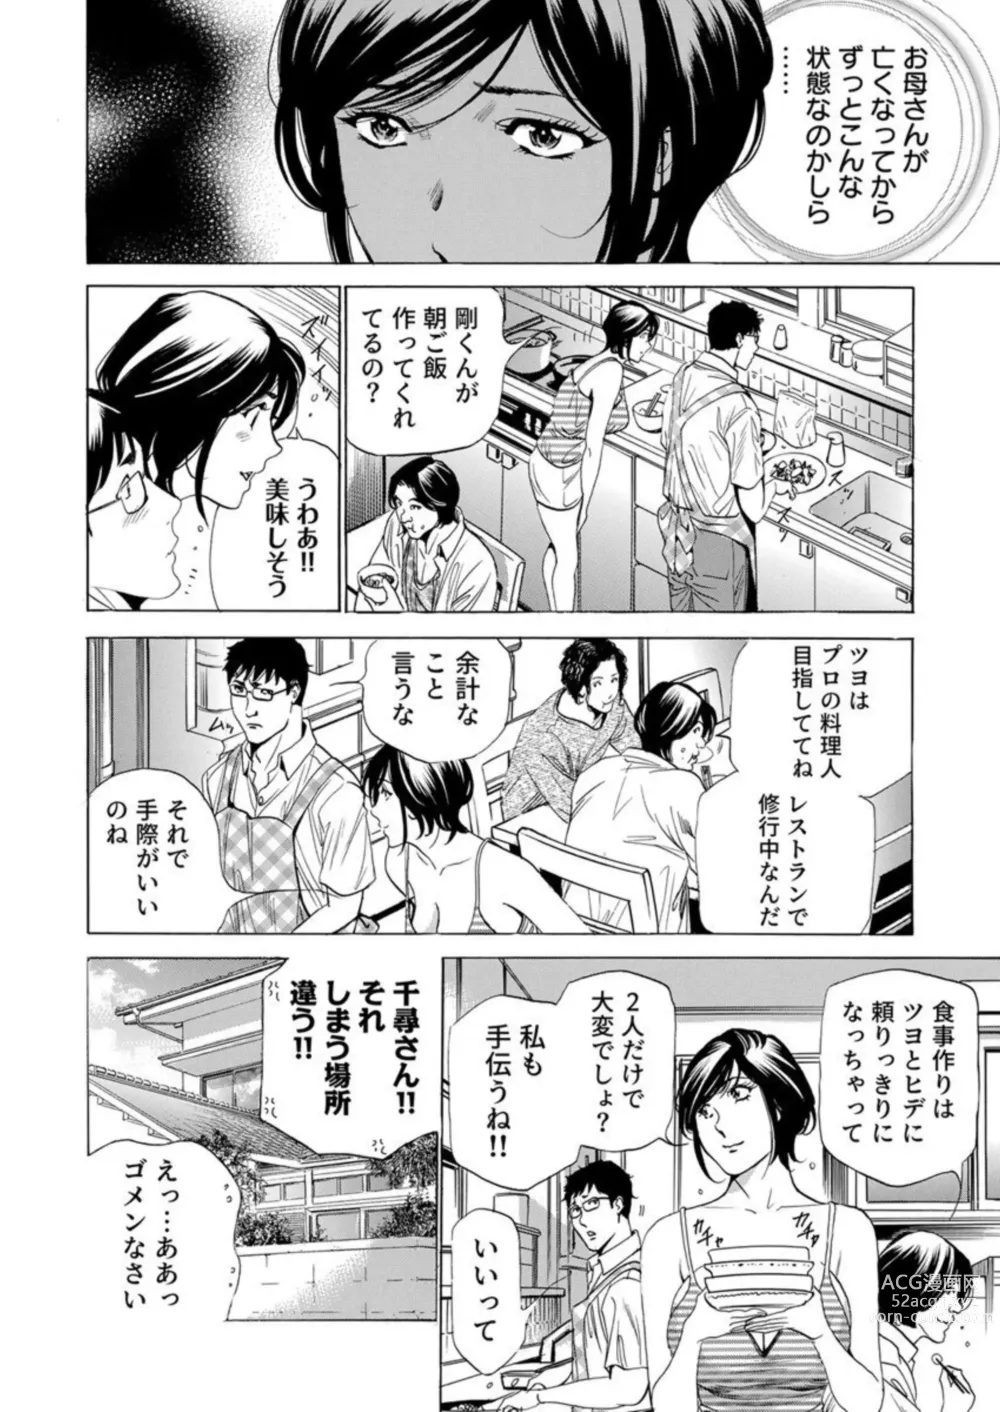 Page 6 of manga Totsugisaki wa Tsureko ga 9 nin!? Gibo, Musukotachi to no sei Kankei ni Nayamu 2